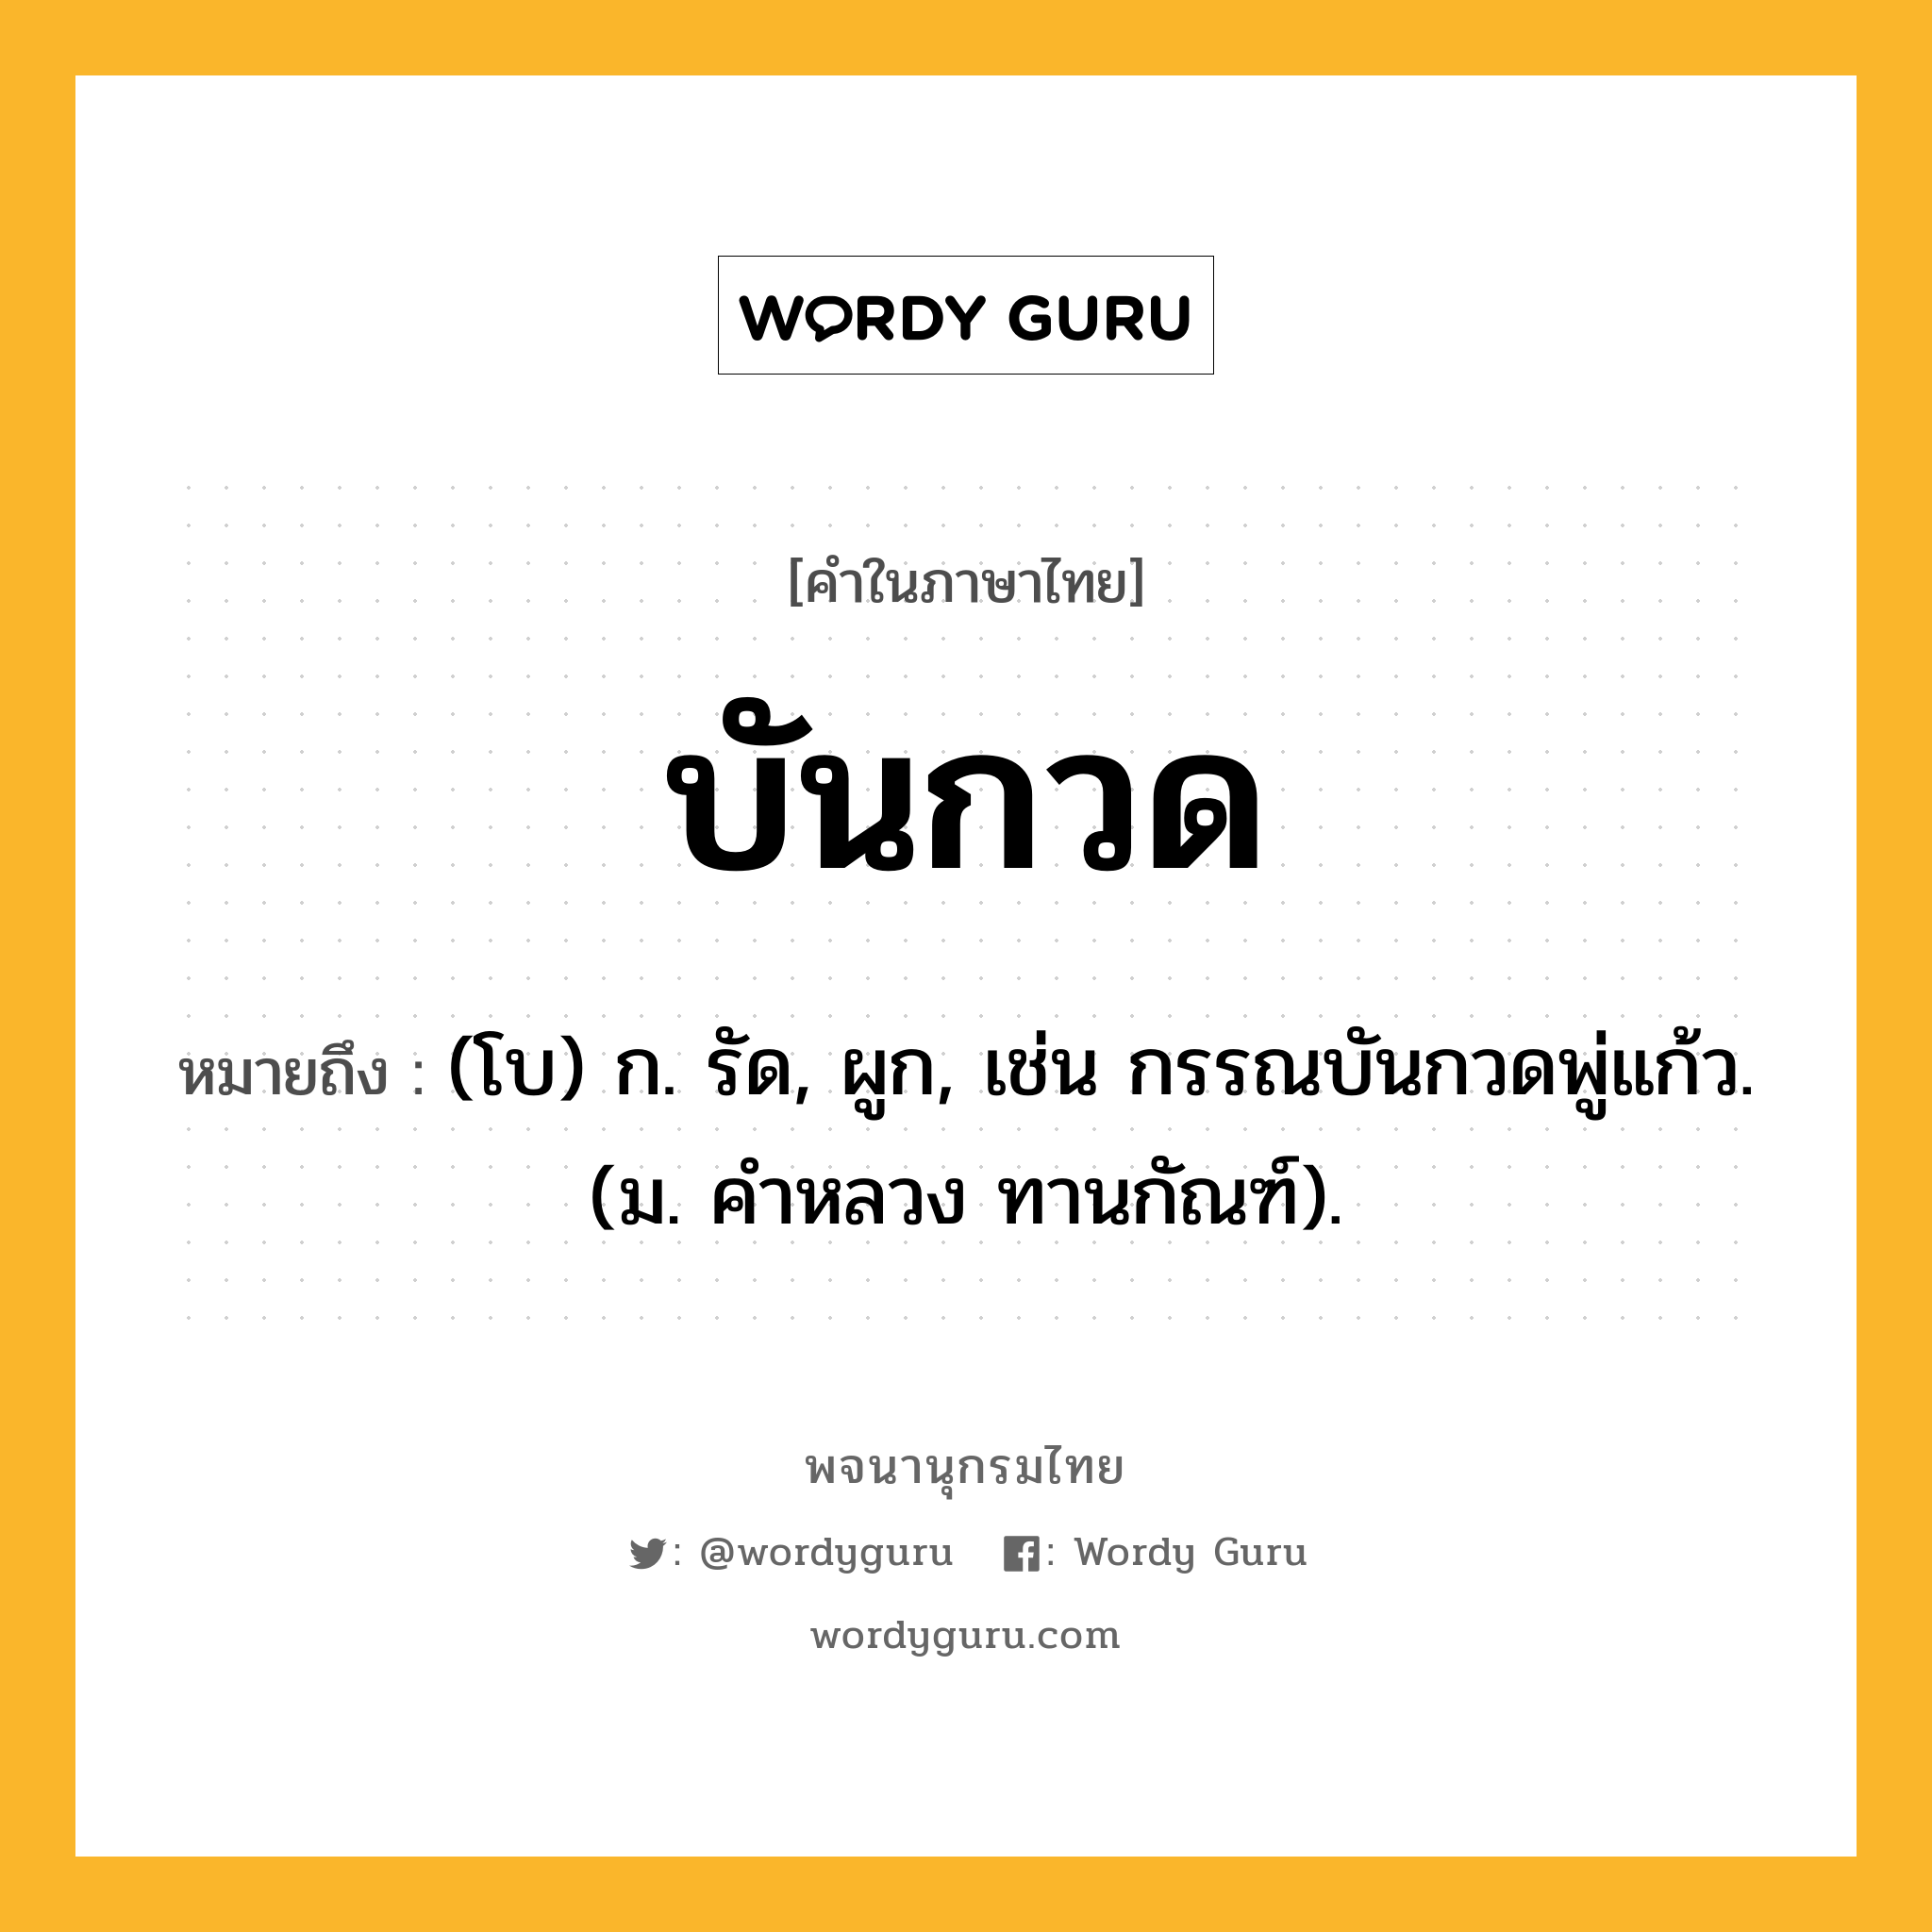 บันกวด ความหมาย หมายถึงอะไร?, คำในภาษาไทย บันกวด หมายถึง (โบ) ก. รัด, ผูก, เช่น กรรณบันกวดพู่แก้ว. (ม. คําหลวง ทานกัณฑ์).